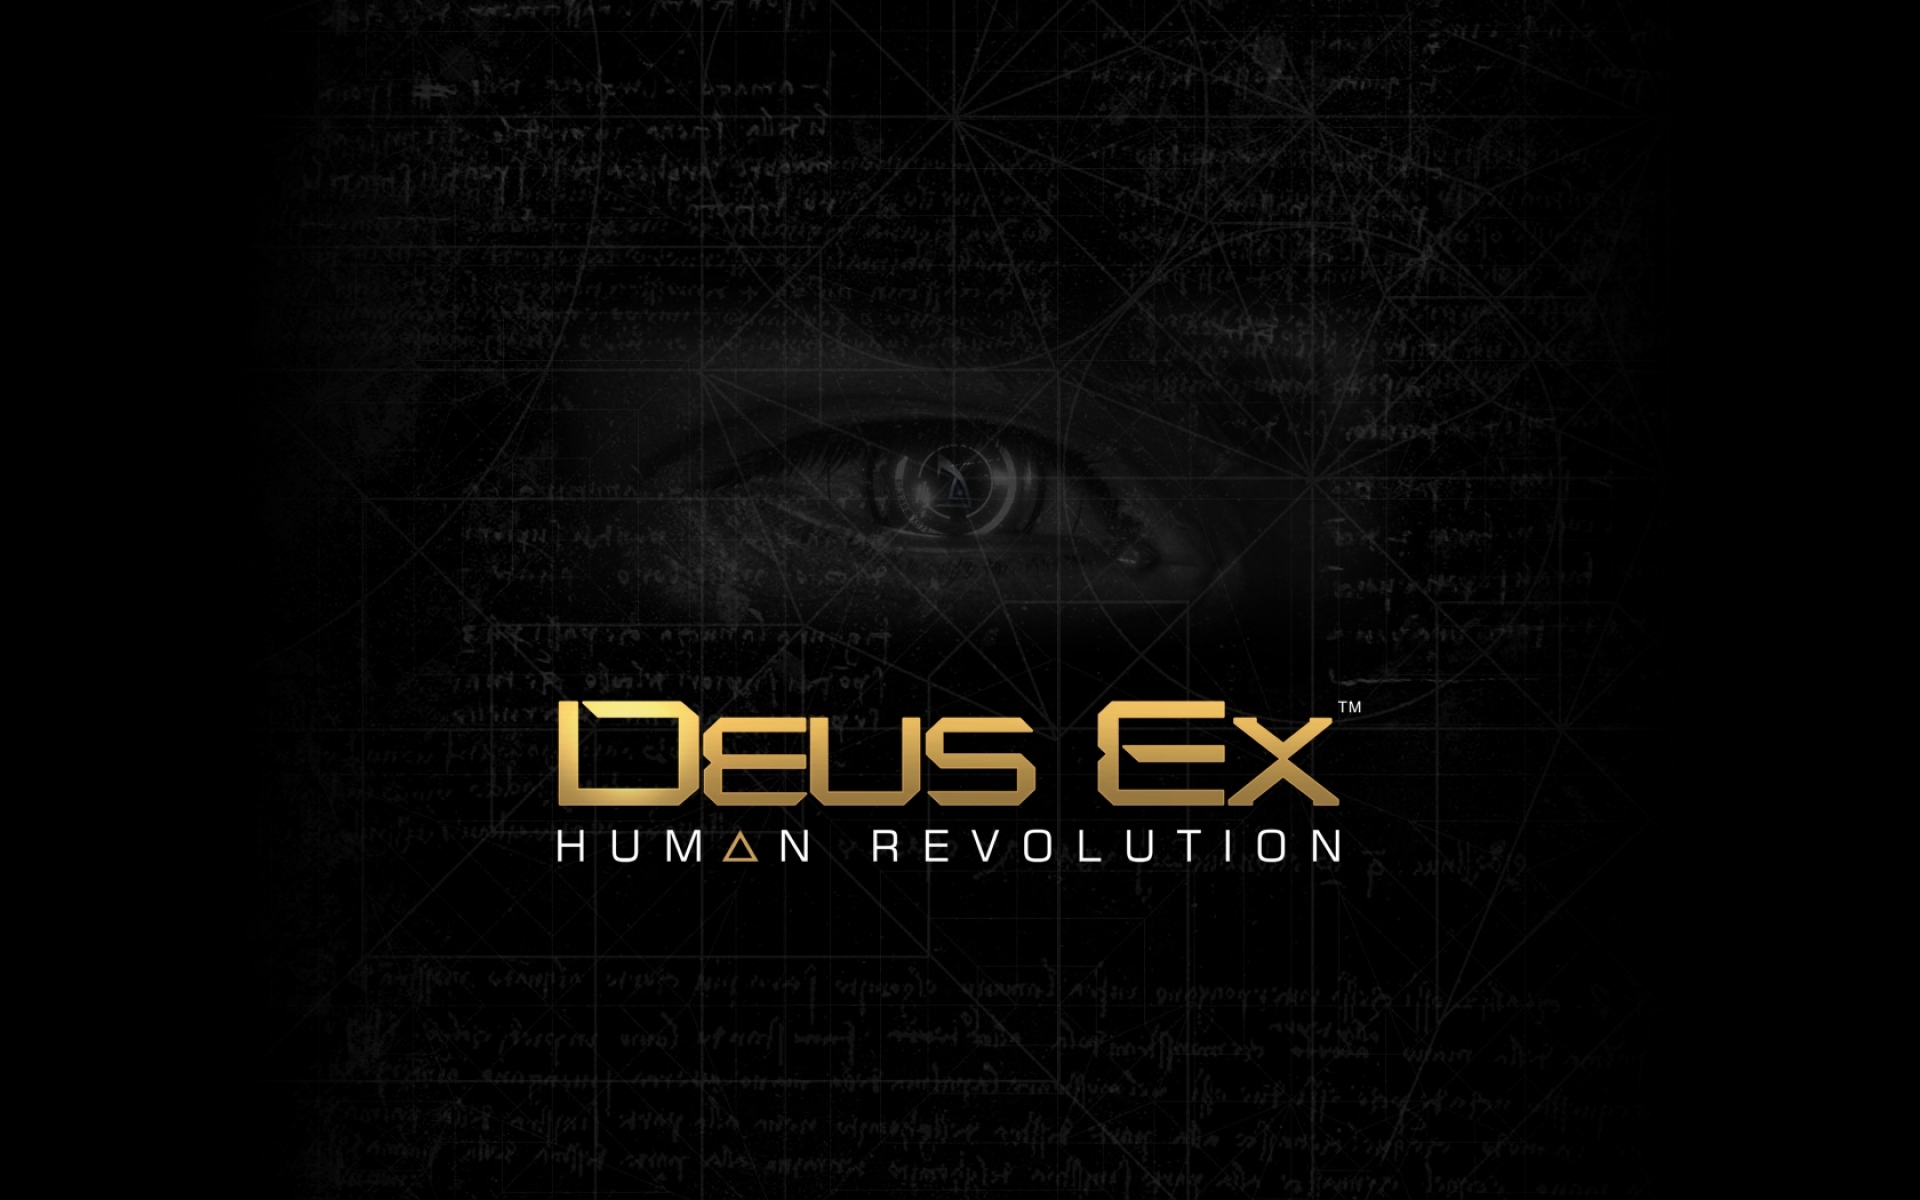 Картинки Deus ex человеческая революция, глаз, фон, слова фото и обои на рабочий стол